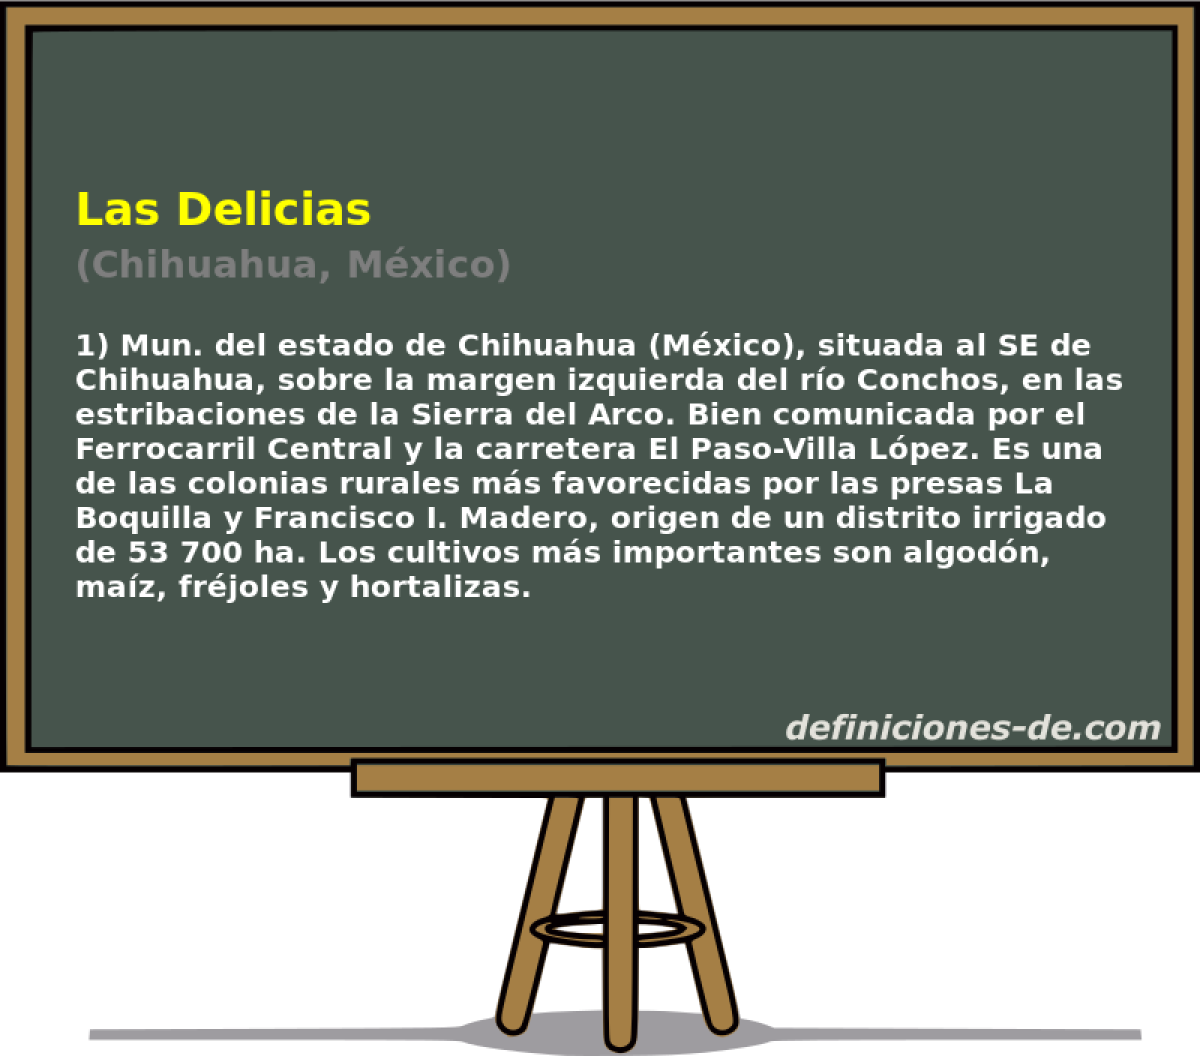 Las Delicias (Chihuahua, Mxico)